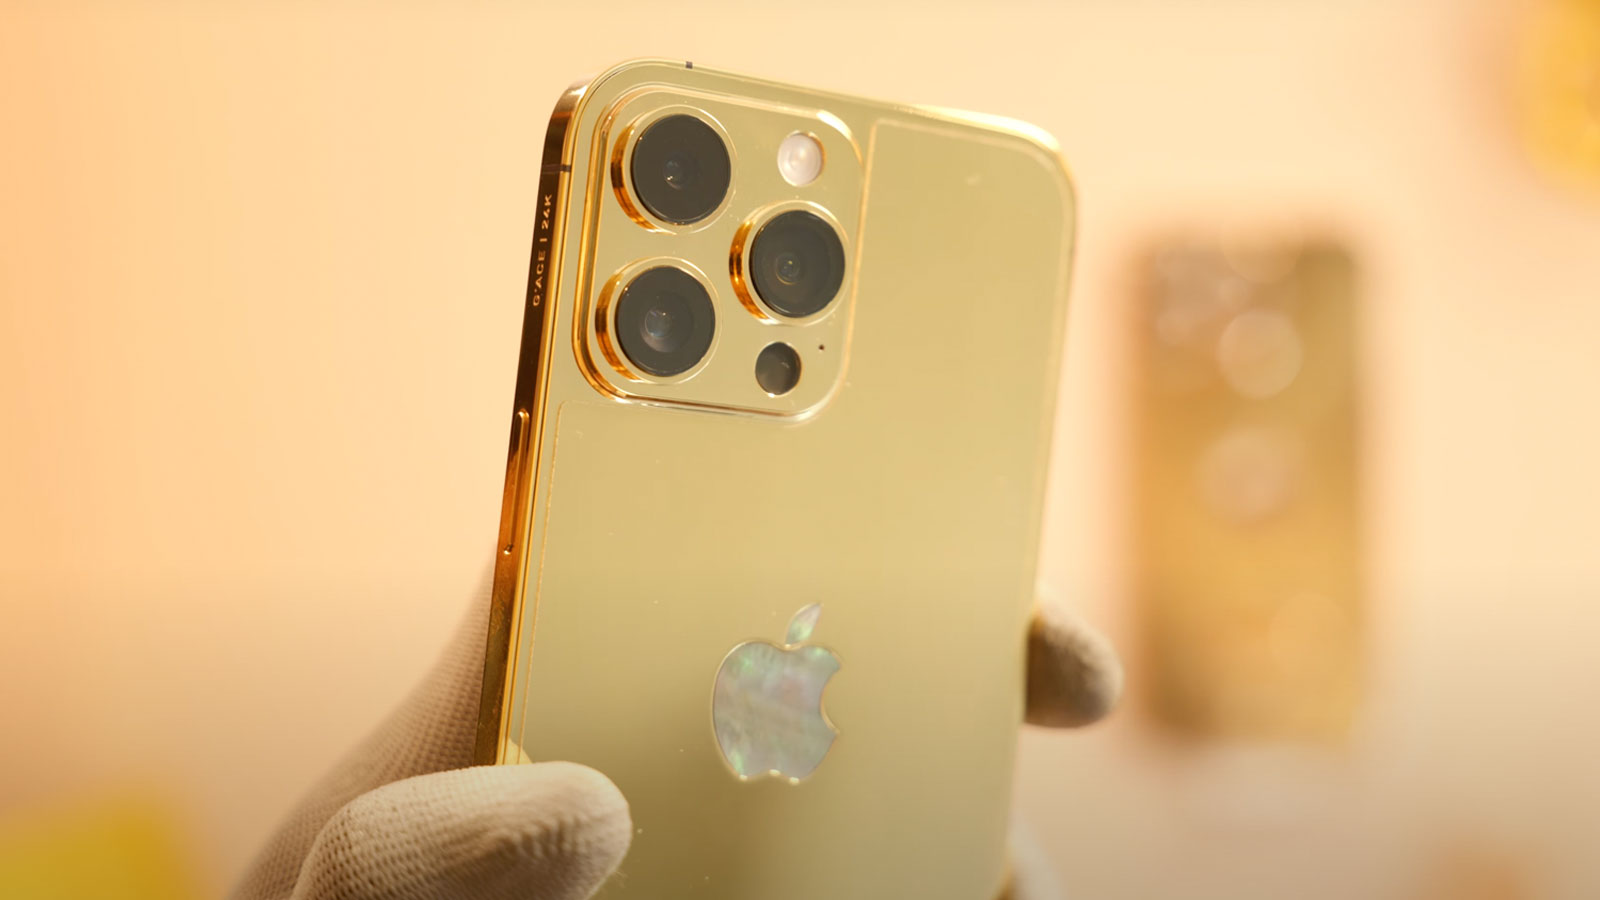 Nhìn vào chiếc iPhone 14 Pro Max mạ vàng này, bạn sẽ cảm nhận được sự sang trọng, đẳng cấp mà nó mang lại. Với chất lượng hoàn thiện tuyệt vời và tông màu vàng óng ánh, chiếc điện thoại này sẽ là một trong những sản phẩm đẹp và độc đáo nhất mà bạn từng sở hữu.